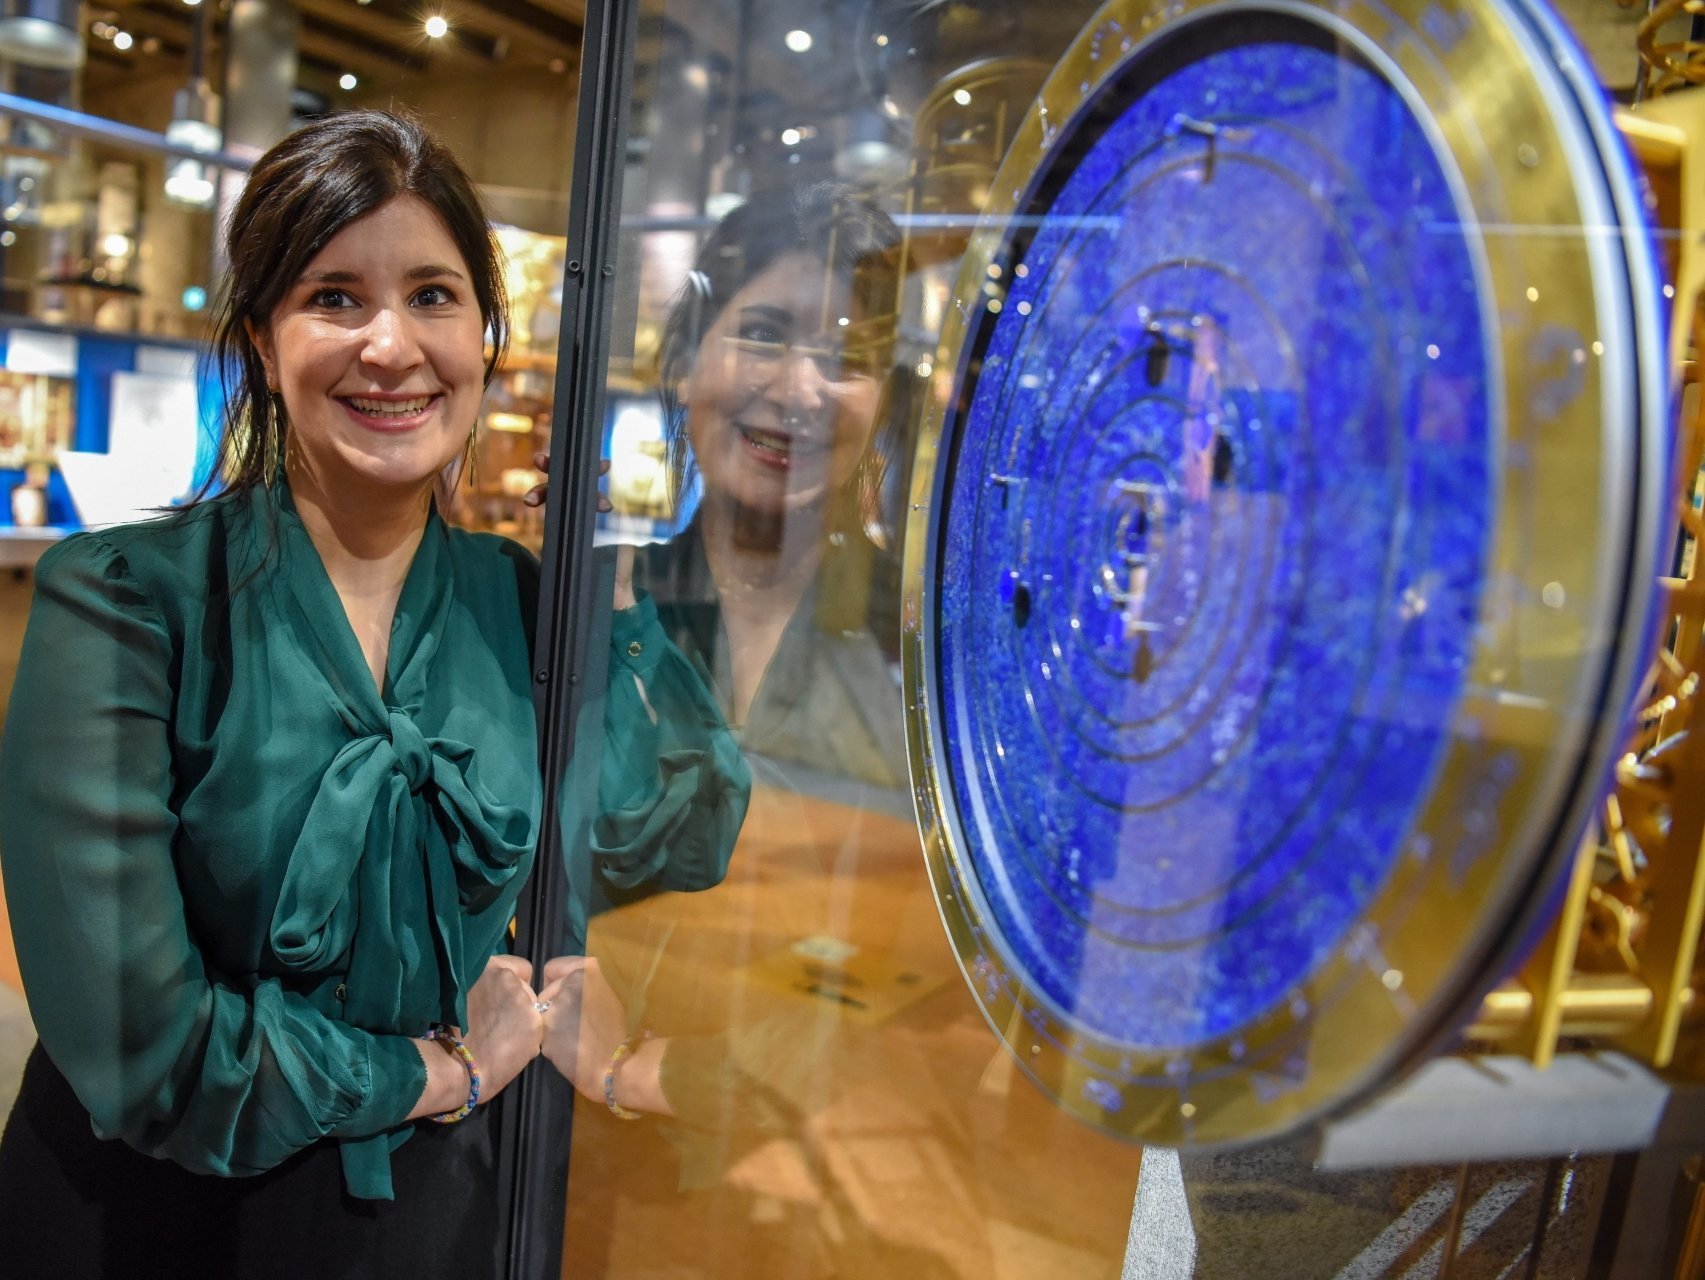 Nathalie Marielloni, conservatrice adjointe du Musée international d’horlogerie, fera la présentation de l’horlogerie à l’époque baroque.